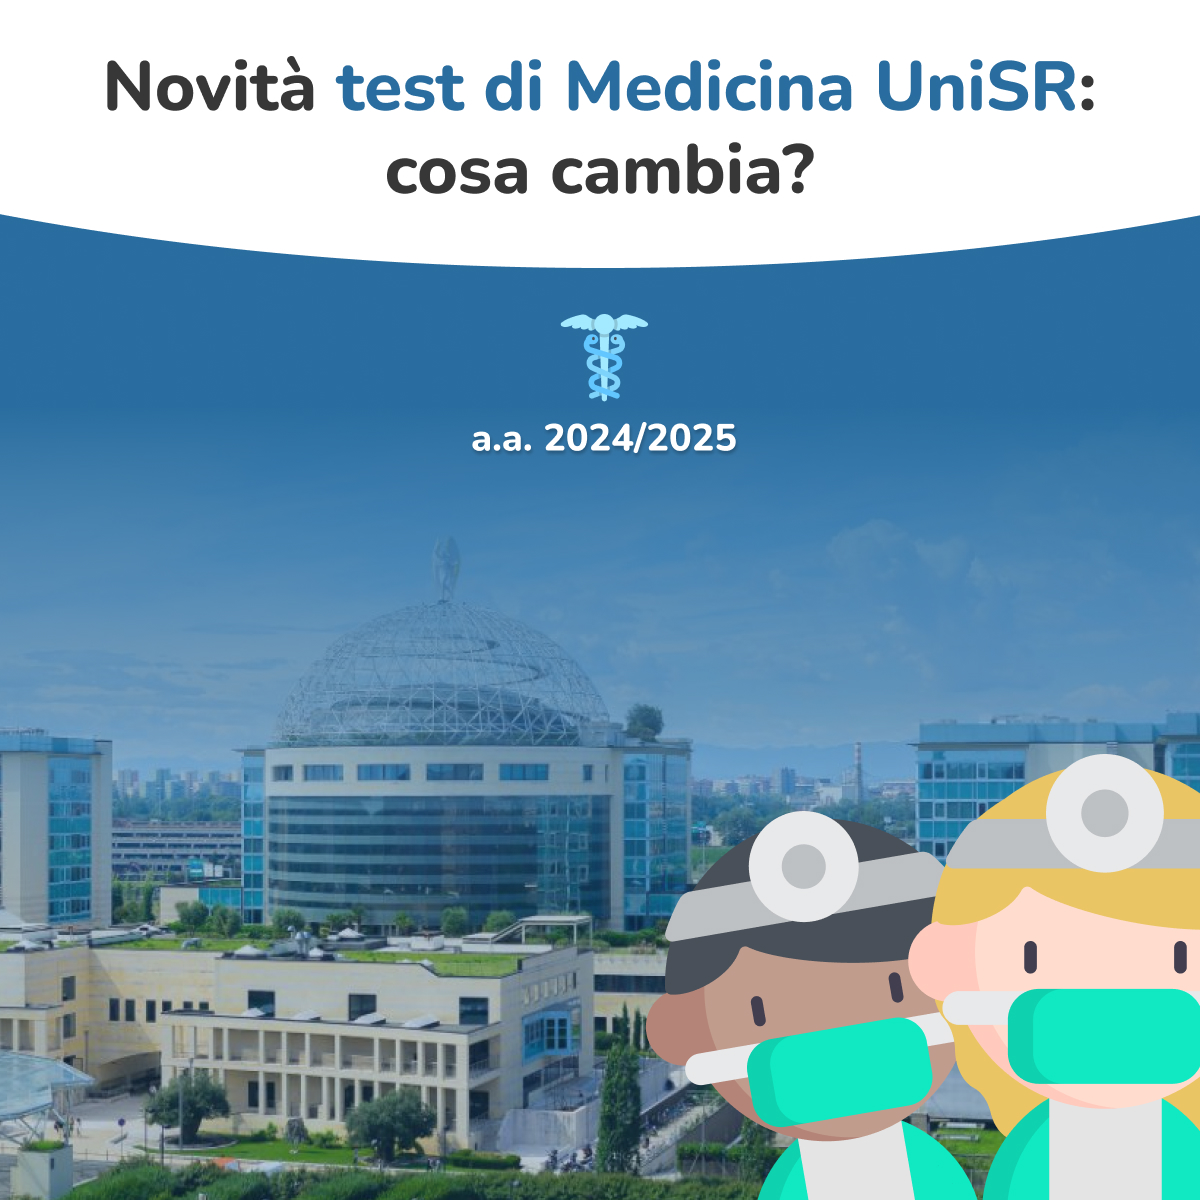 Novità test di Medicina UniSR 2024/2025 - blog notes thefaculty